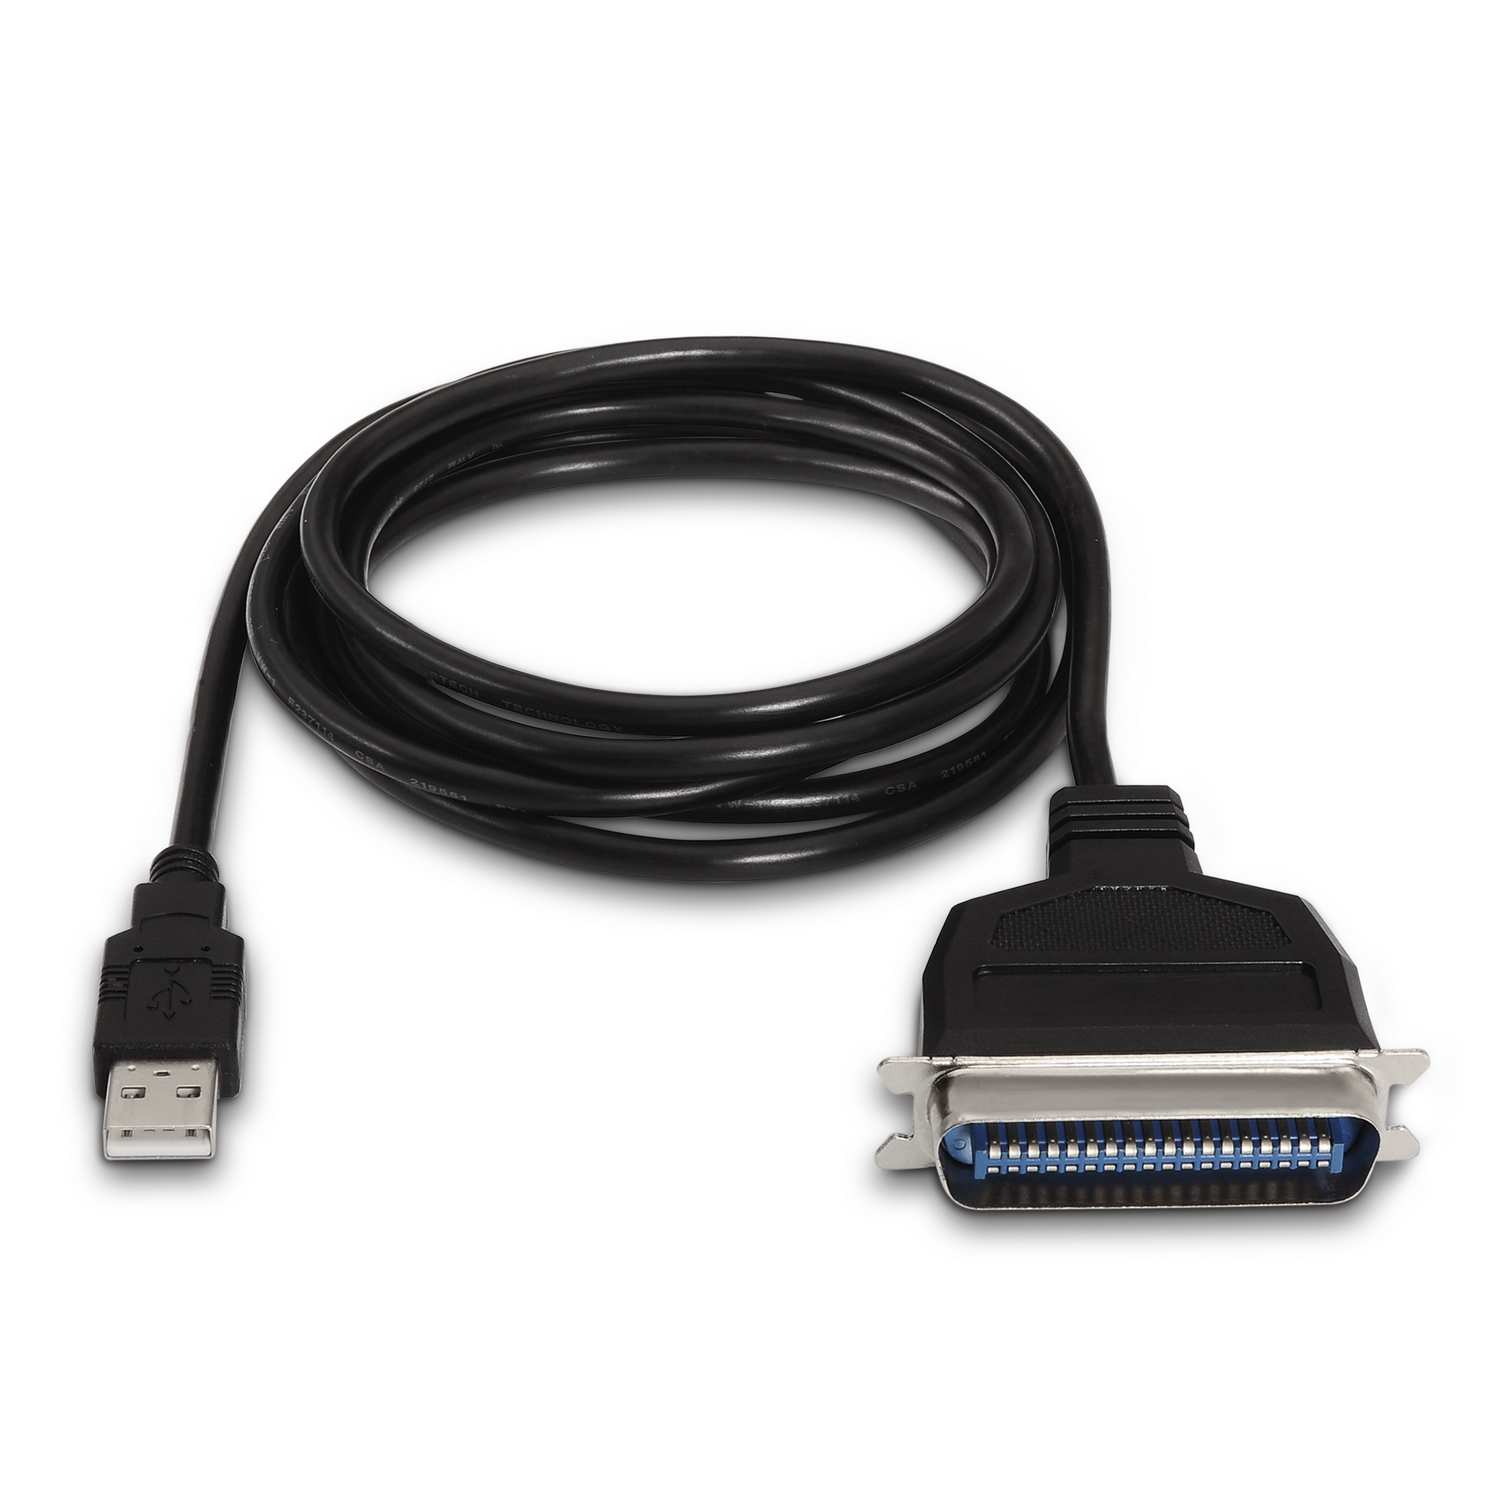 Convertisseur d'imprimante USB Aisens - Type A mâle vers CN36 (IEEE1284)/M - 1,5 m - Couleur noire